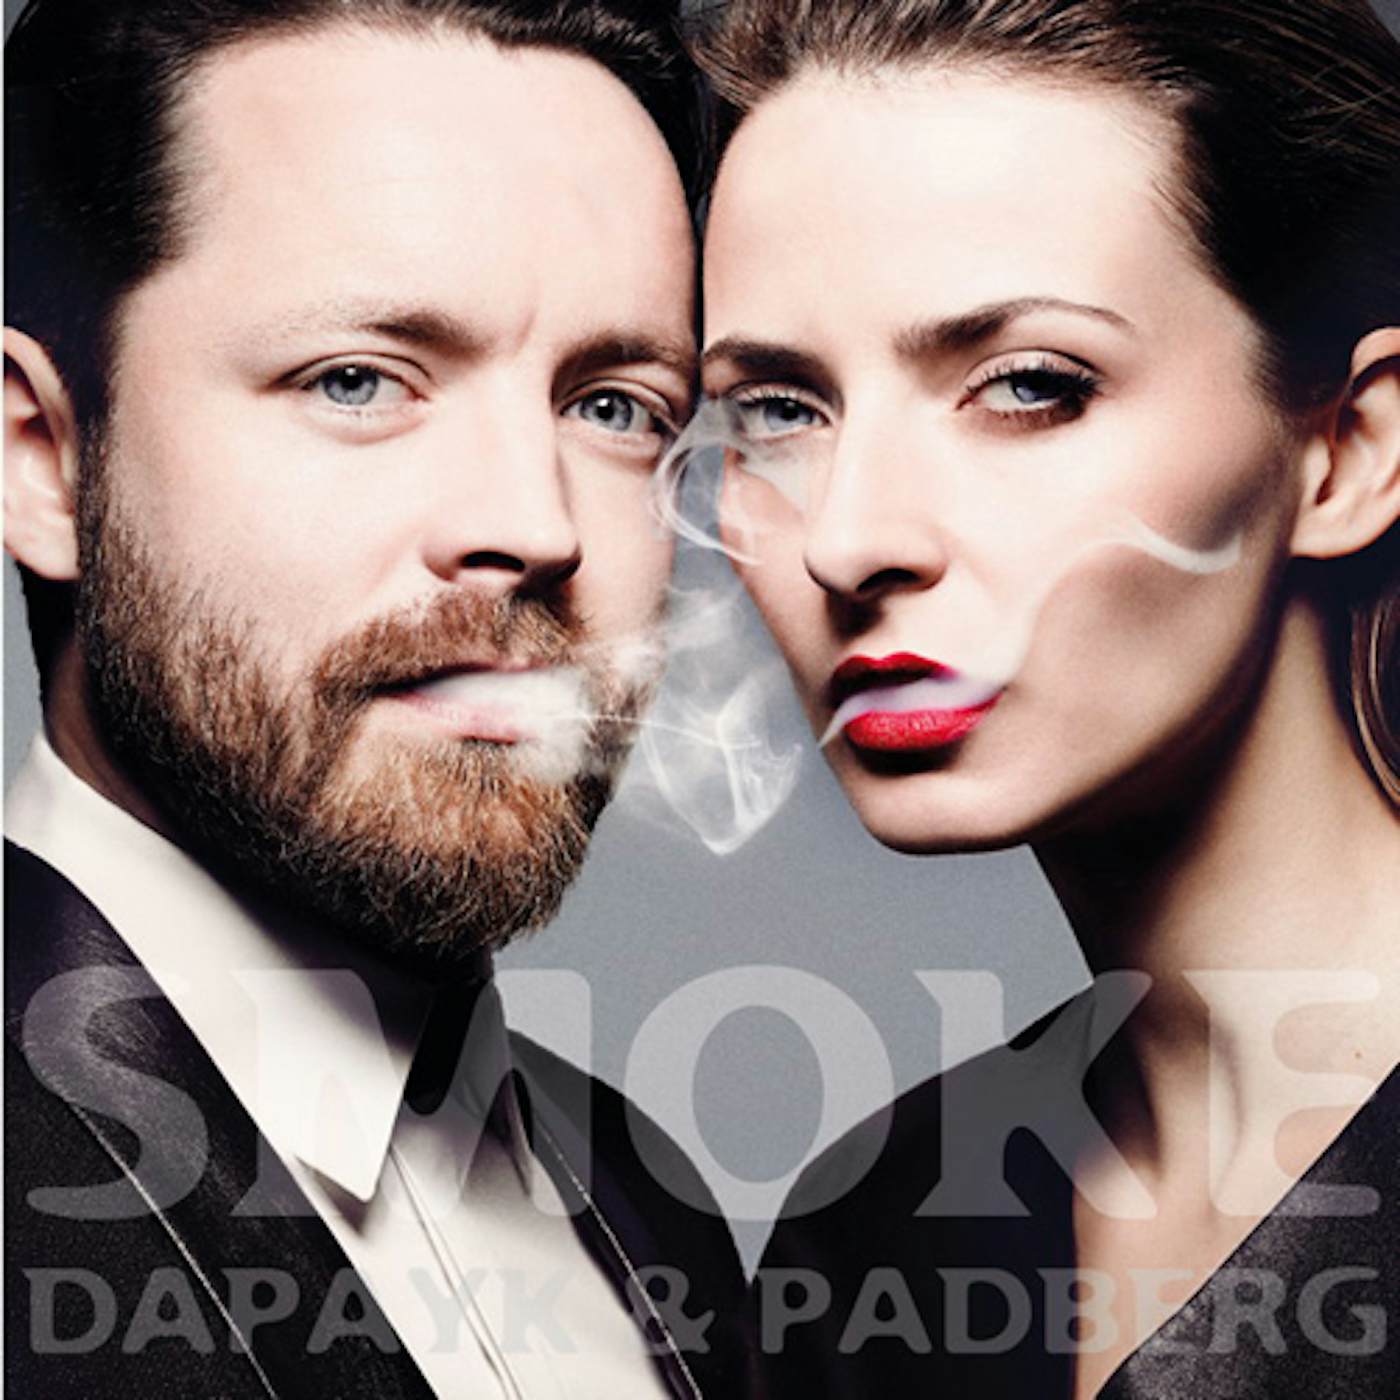 Dapayk & Padberg Smoke Vinyl Record